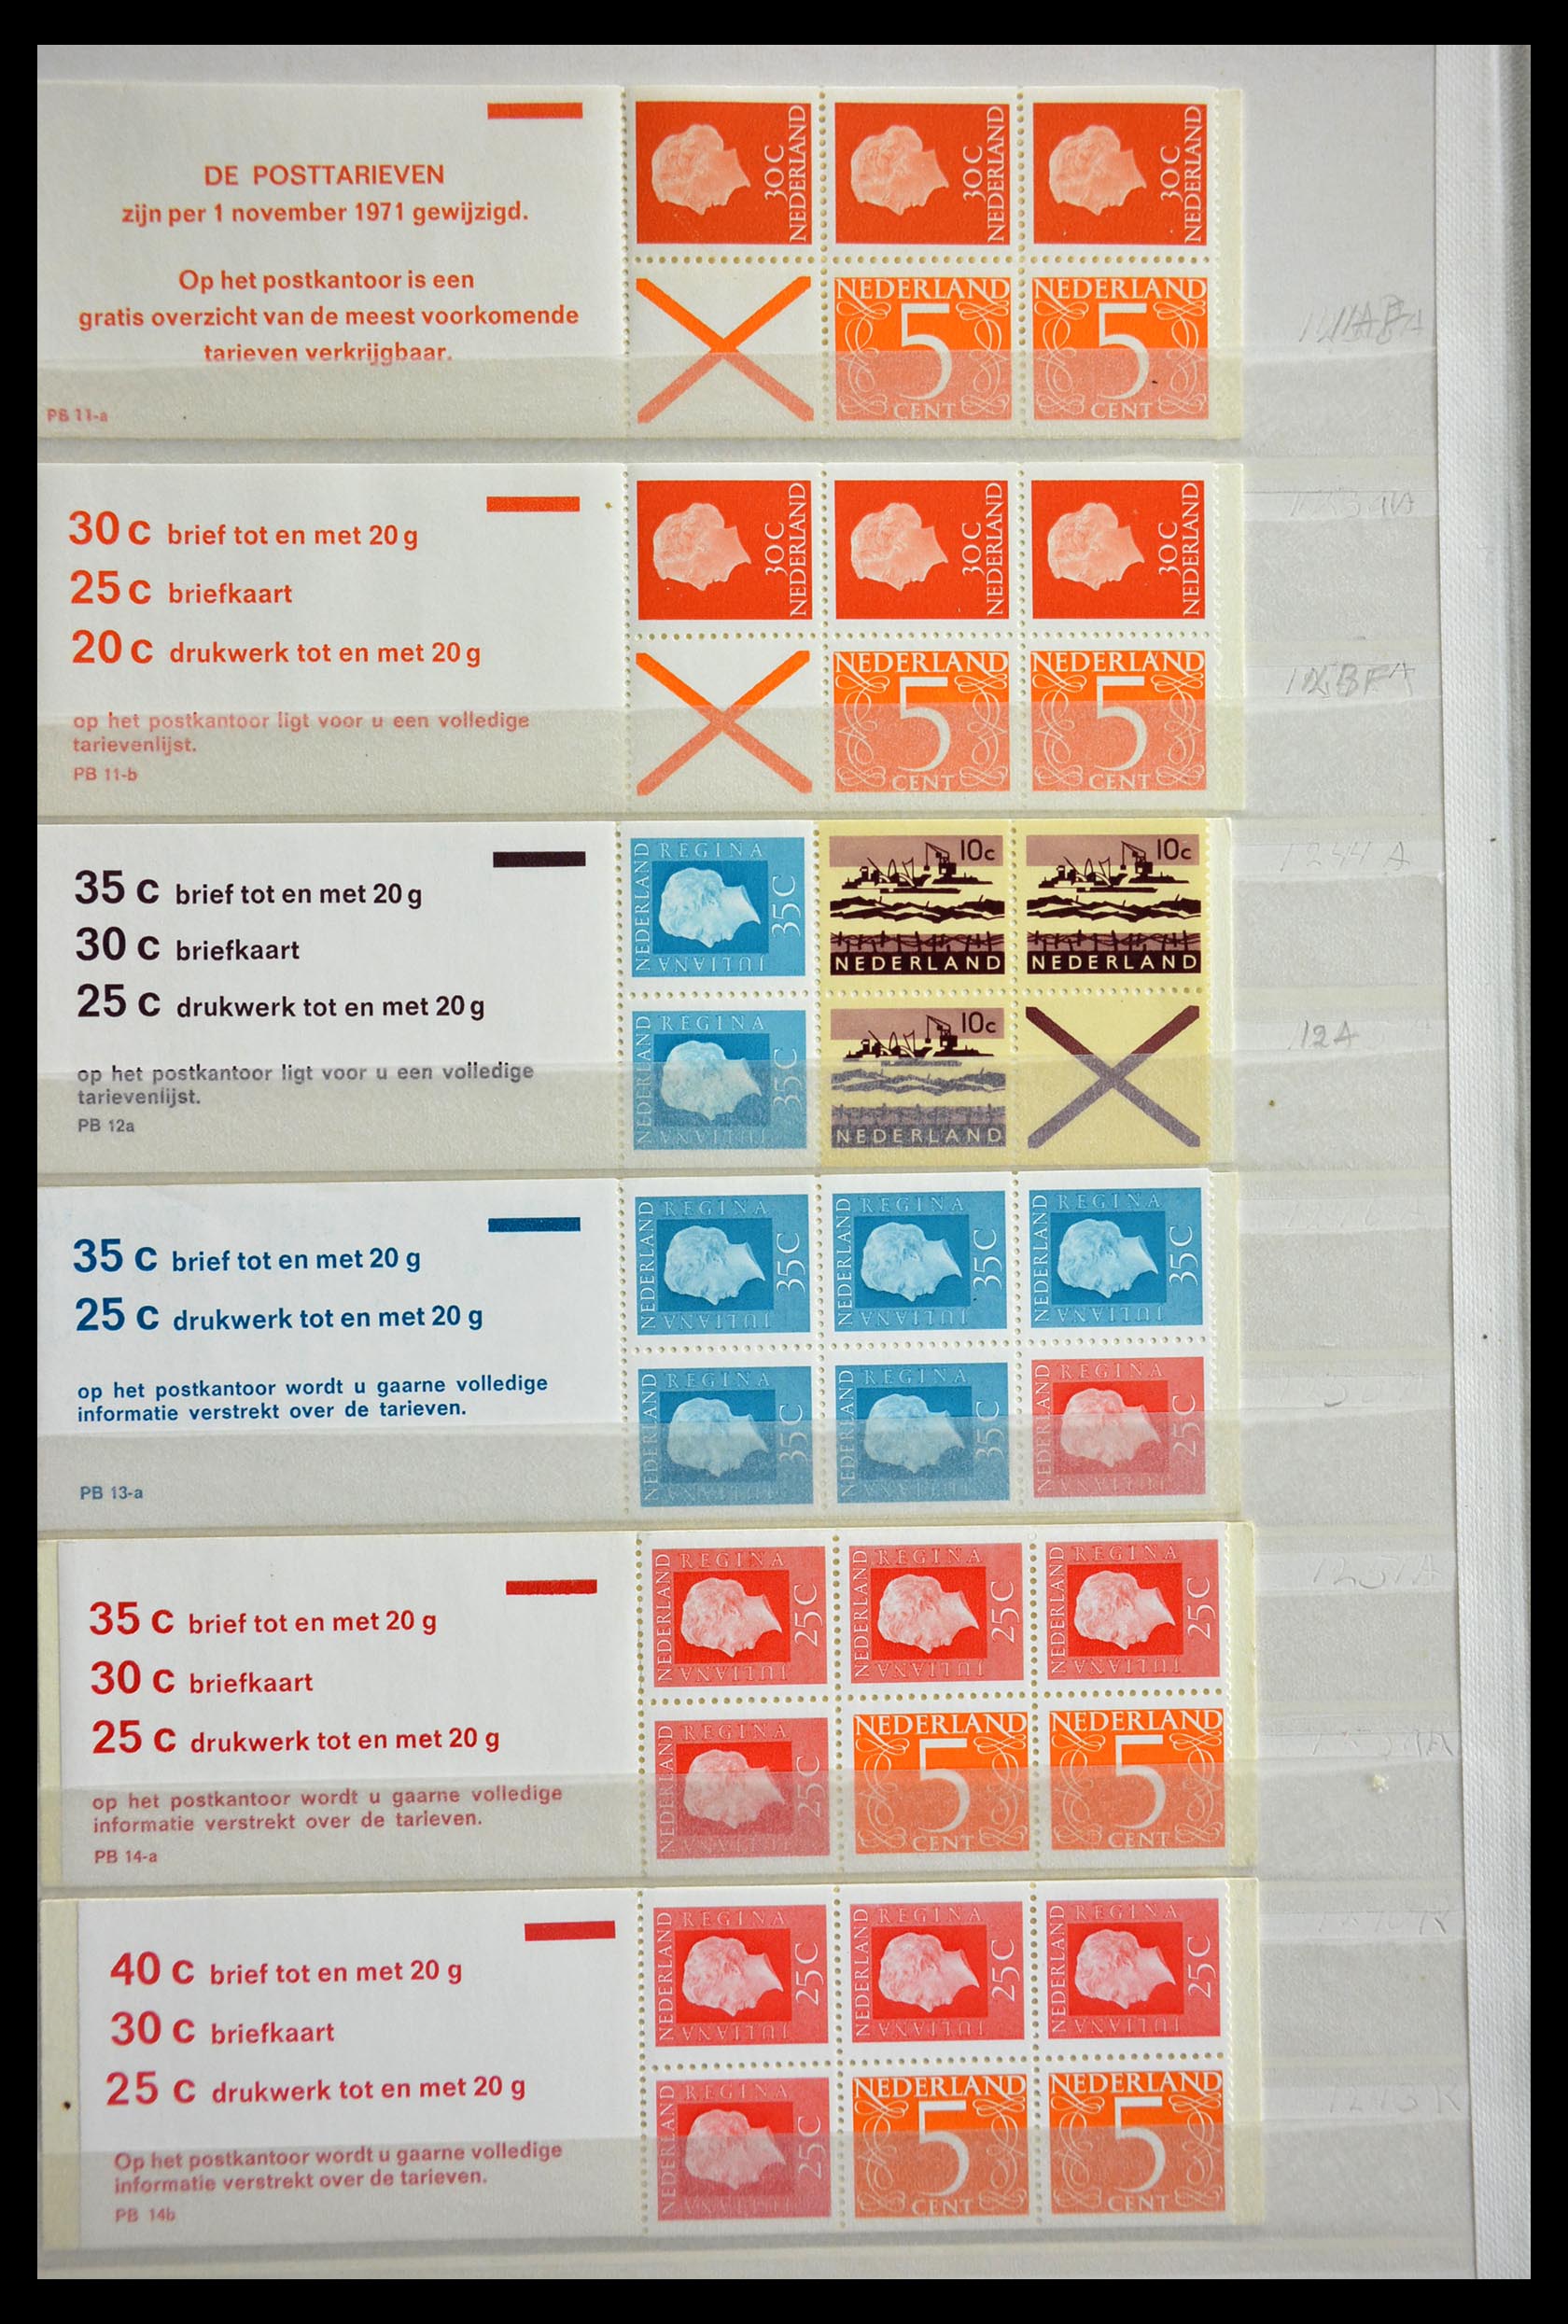 29387 008 - 29387 Netherlands stamp booklets 1964-2014.